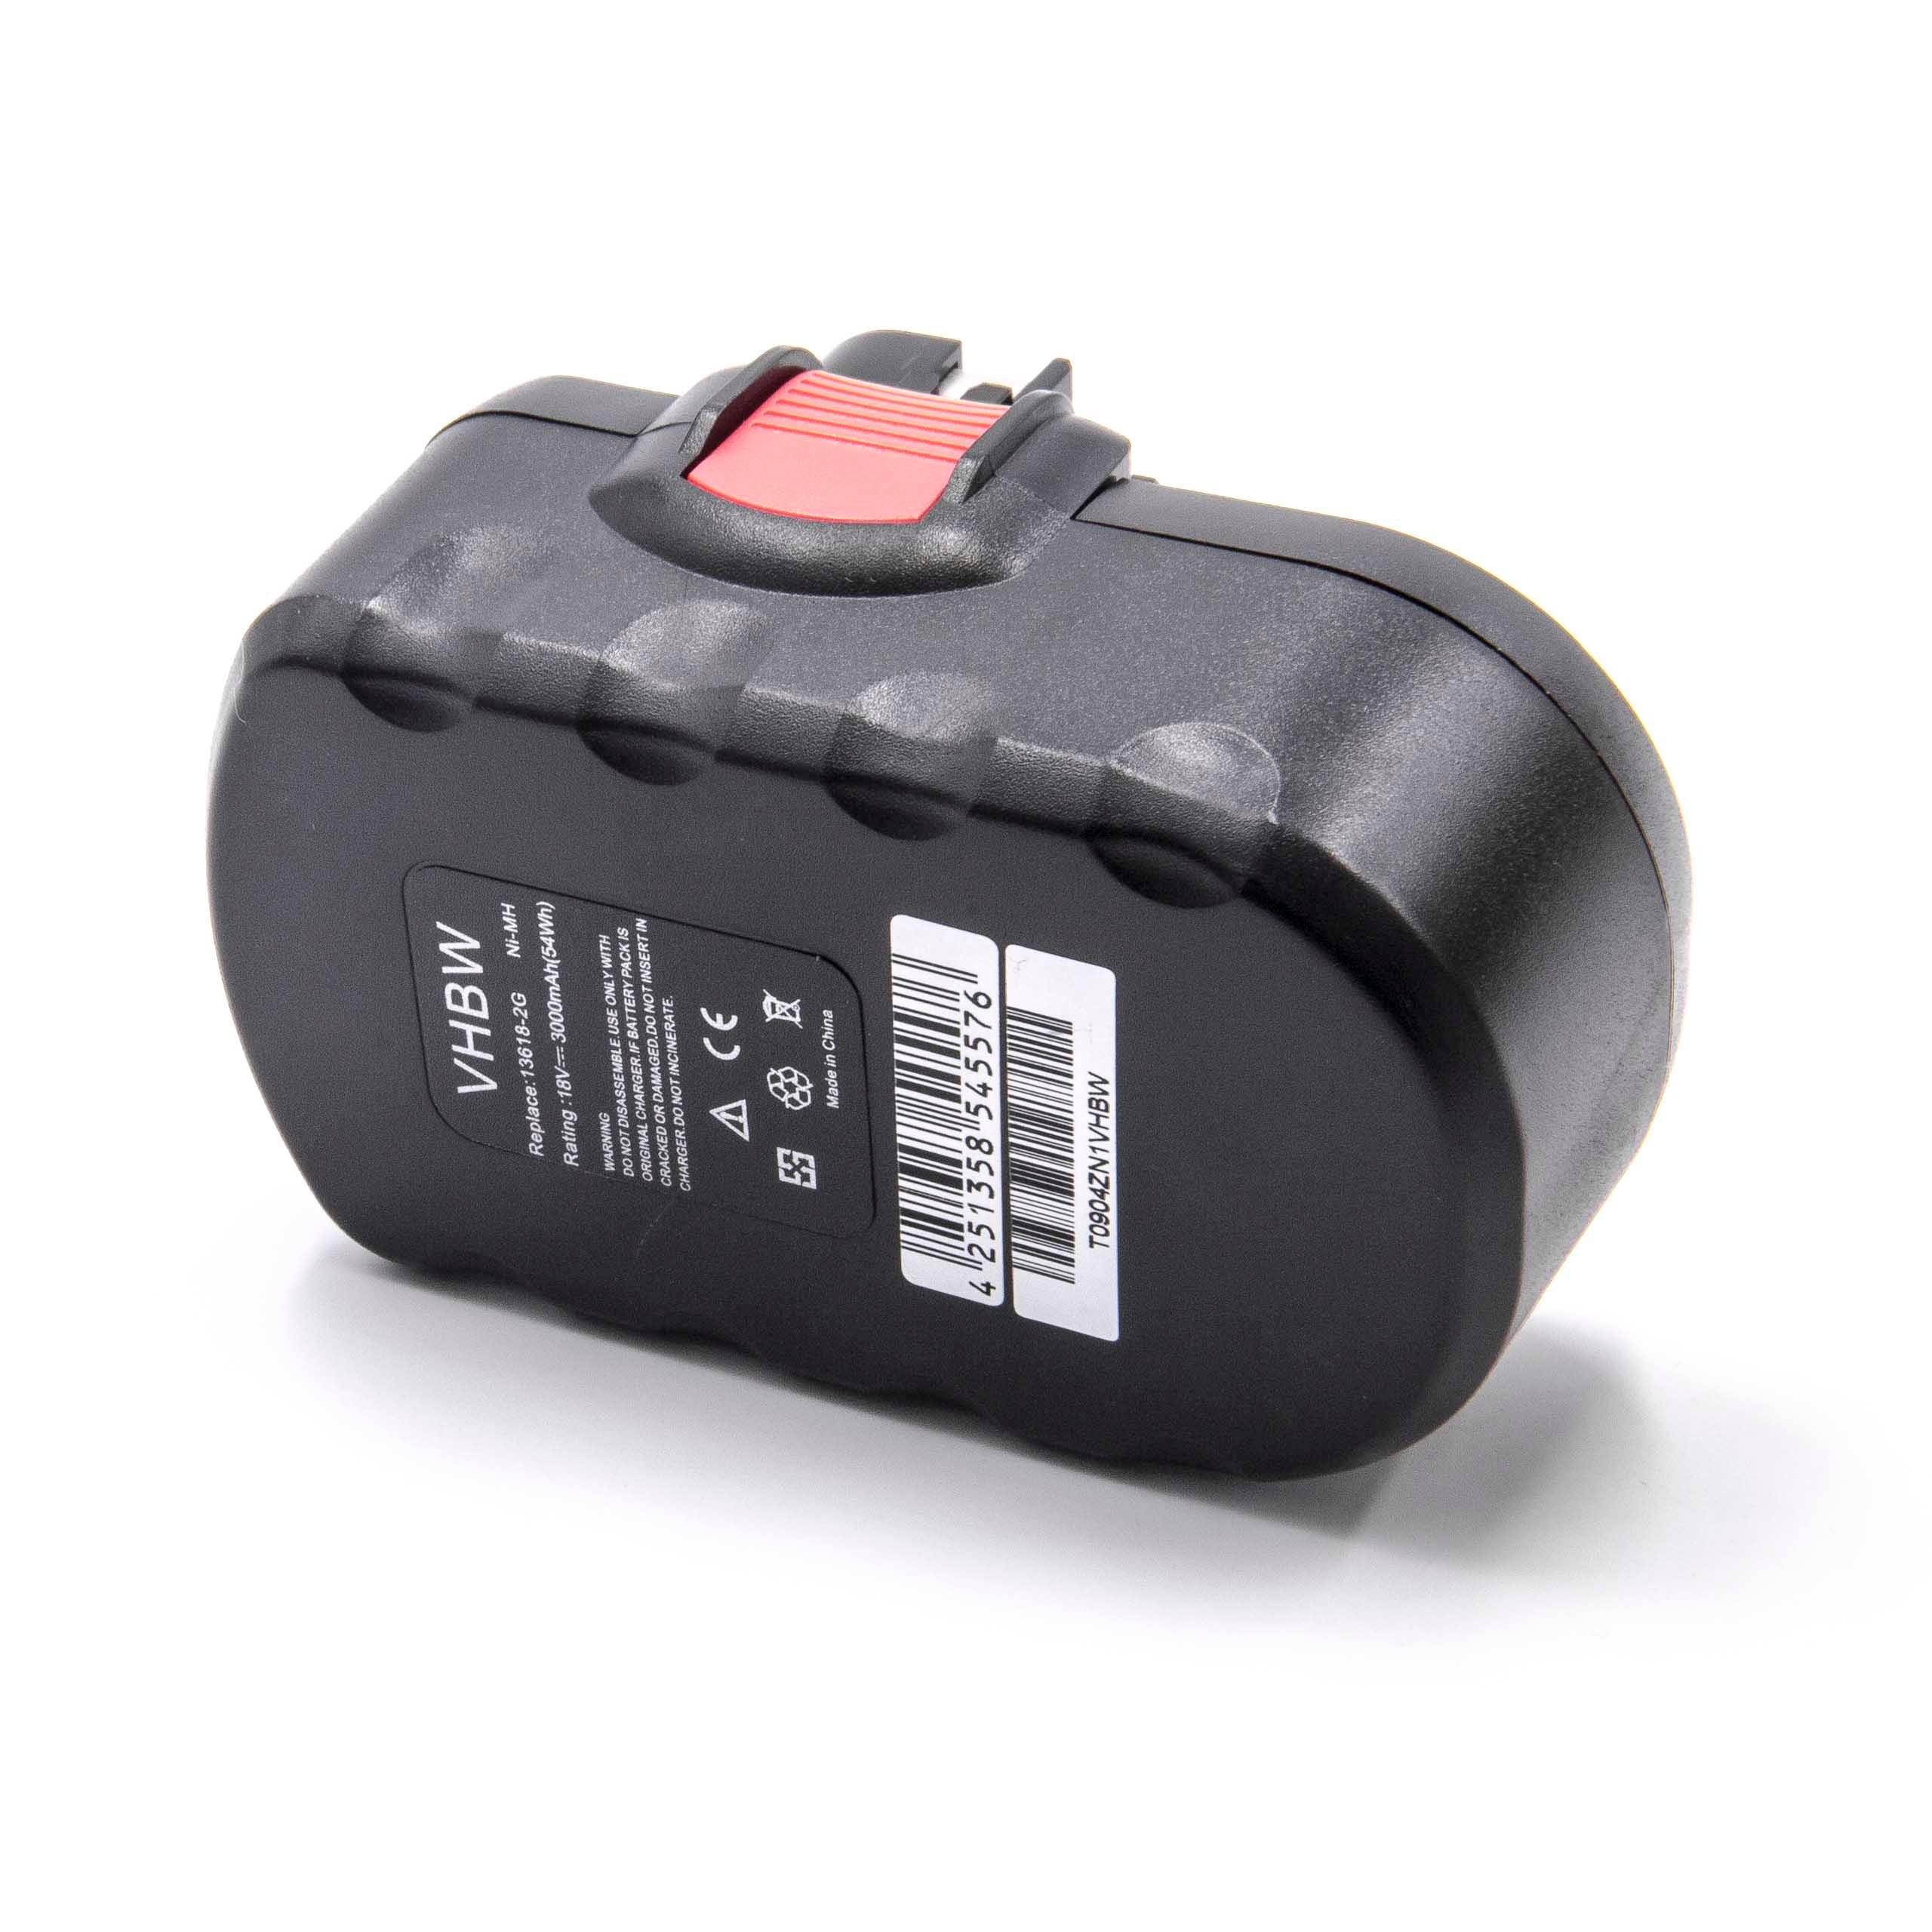 Akumulator do elektronarzędzi zamiennik Bosch 2 607 335 278, 2 607 335 266 - 3000 mAh, 18 V, NiMH